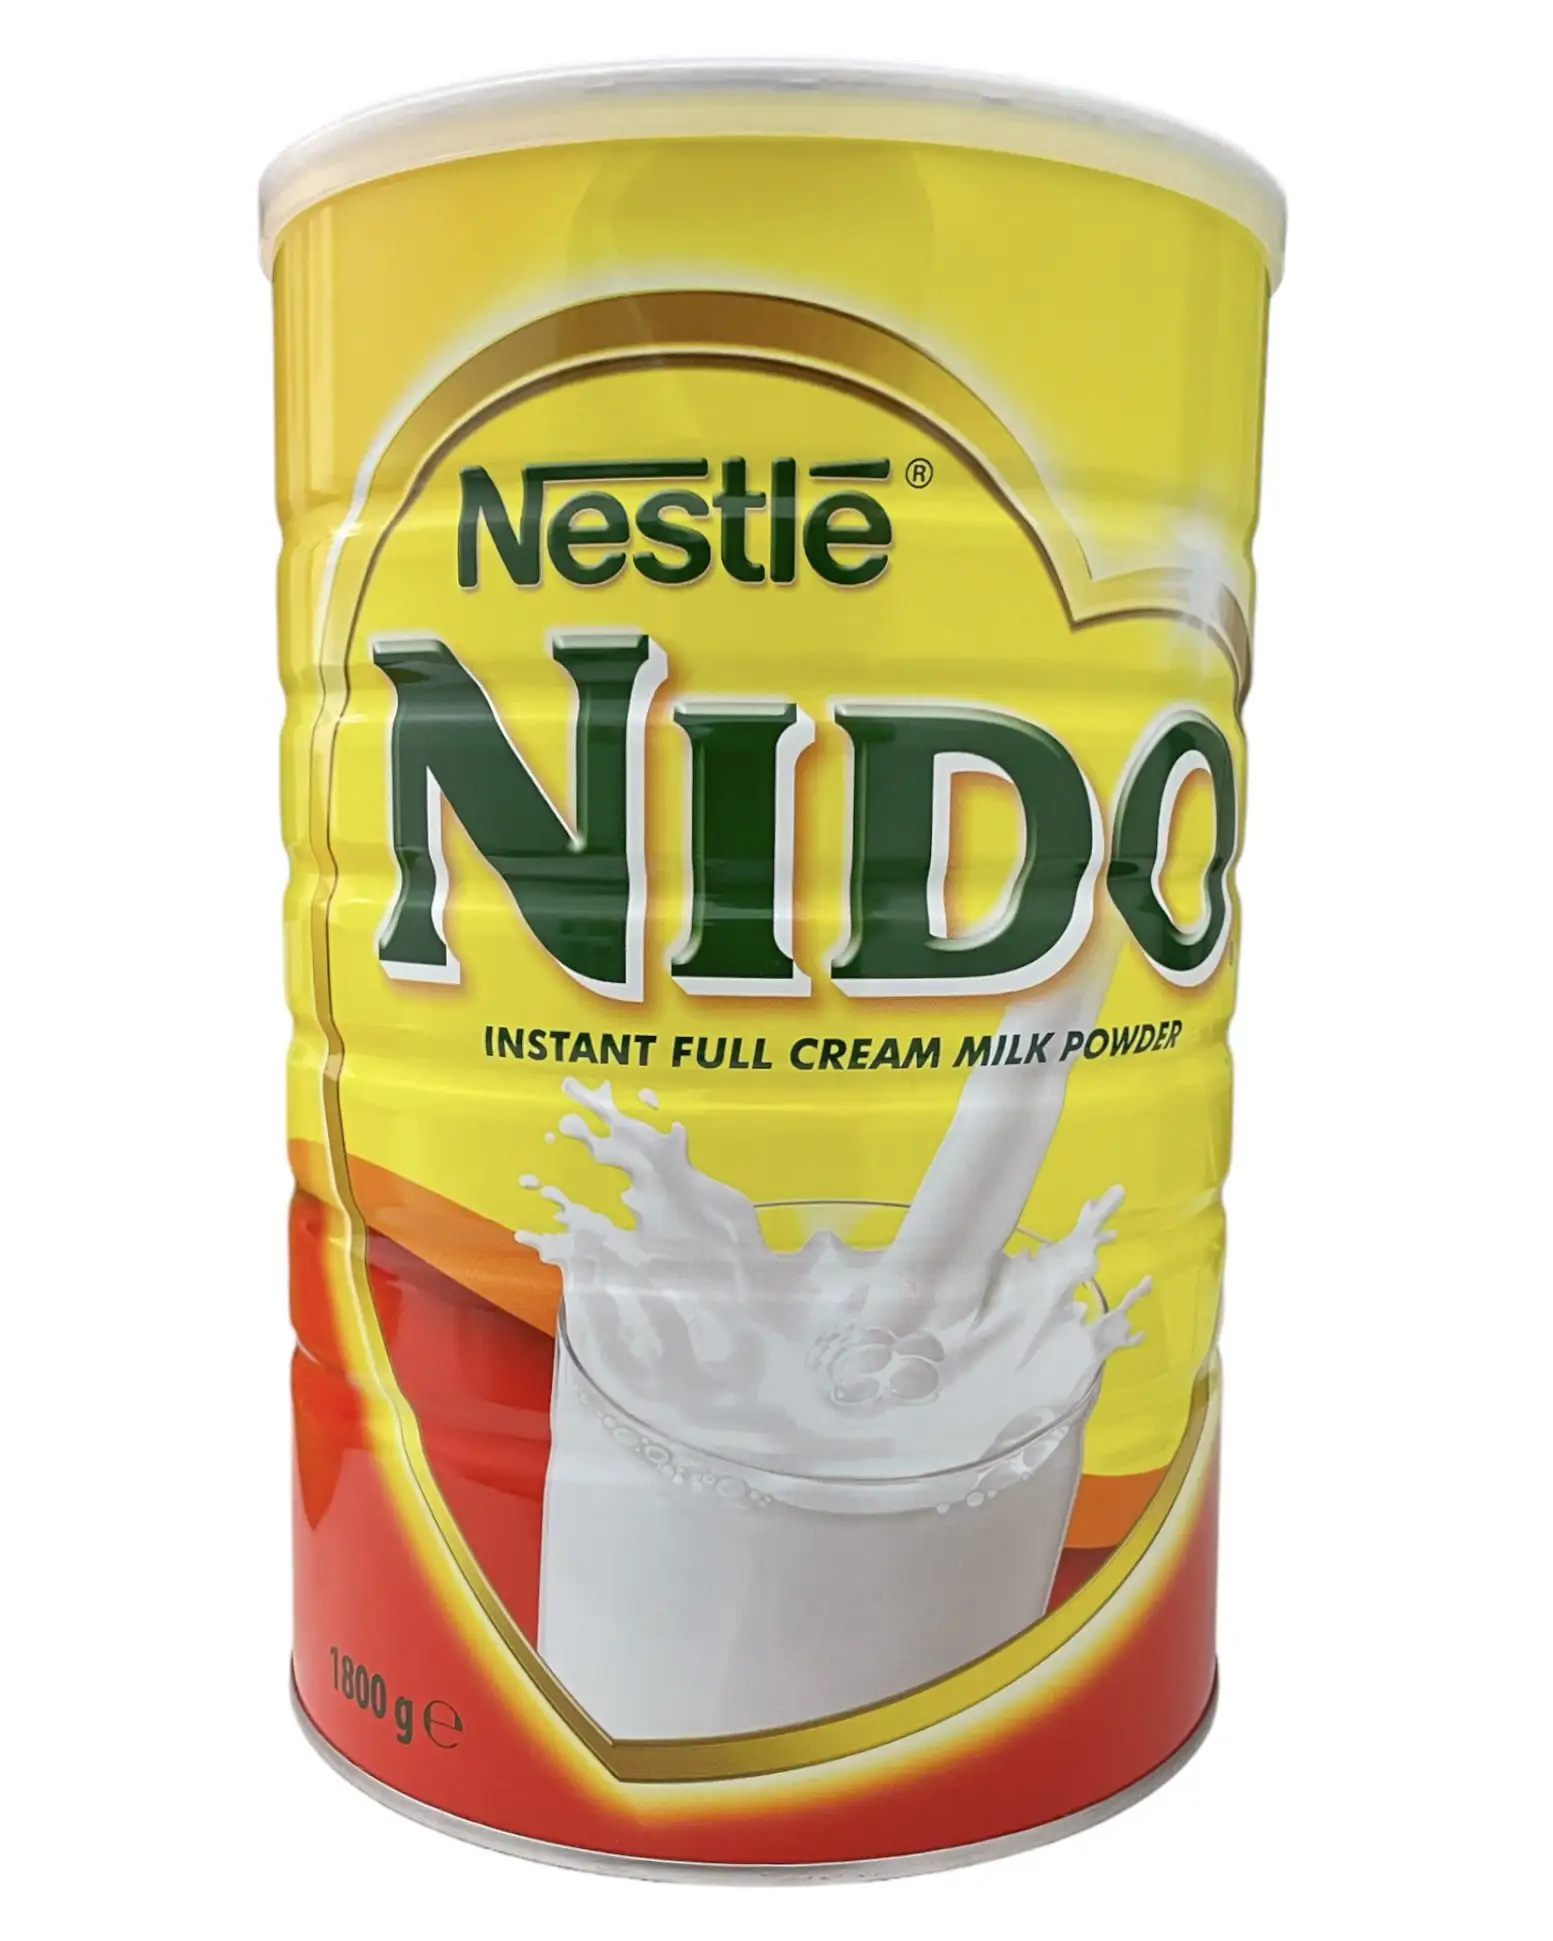 최고 등급 니도 파우더 우유 판매/니도 밀크 인스턴트 풀 크림 분유 대량 판매